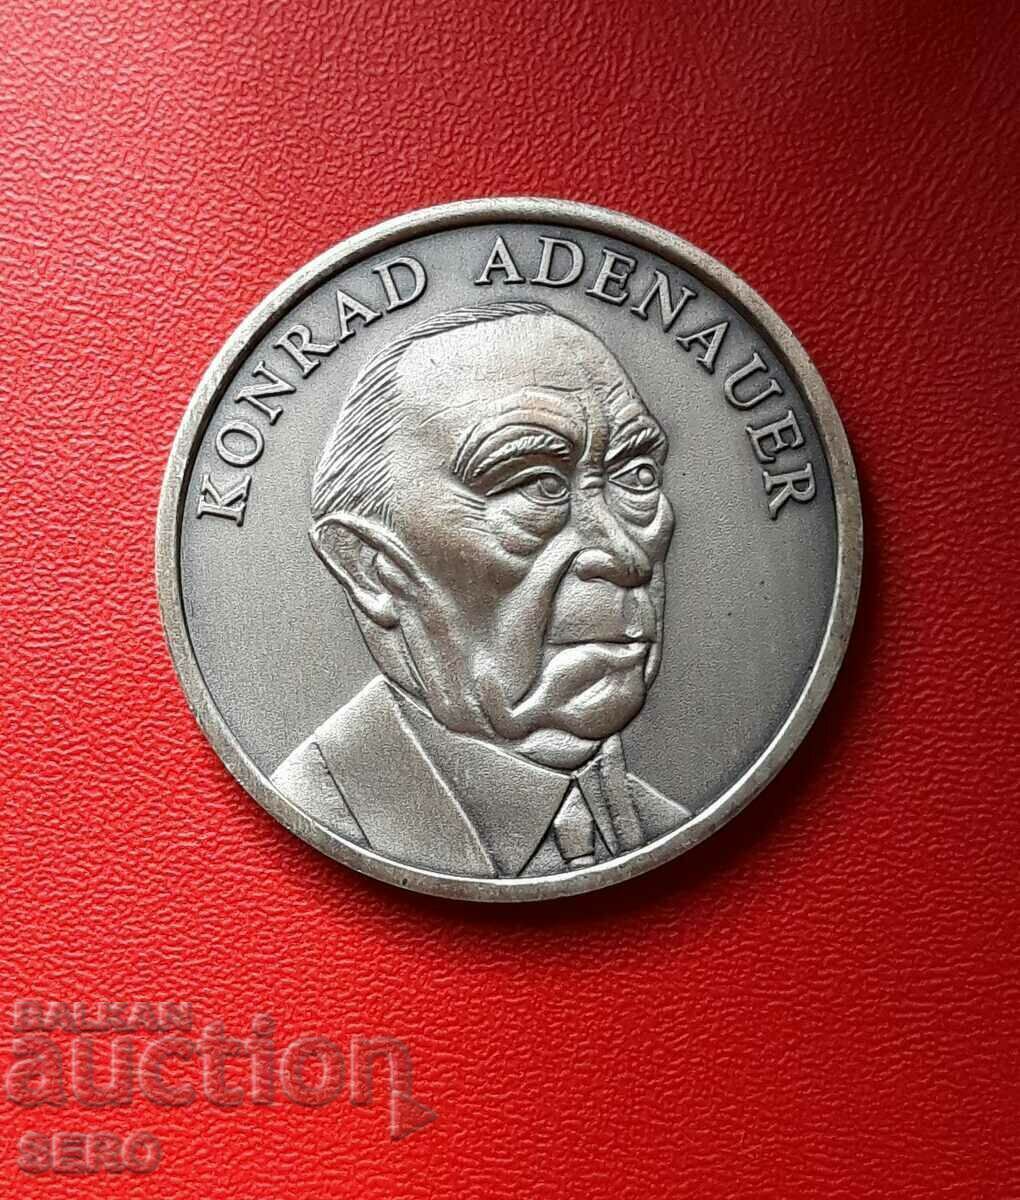 Γερμανία-μετάλλιο-40 χρόνια GDR-Konrad Adenauer